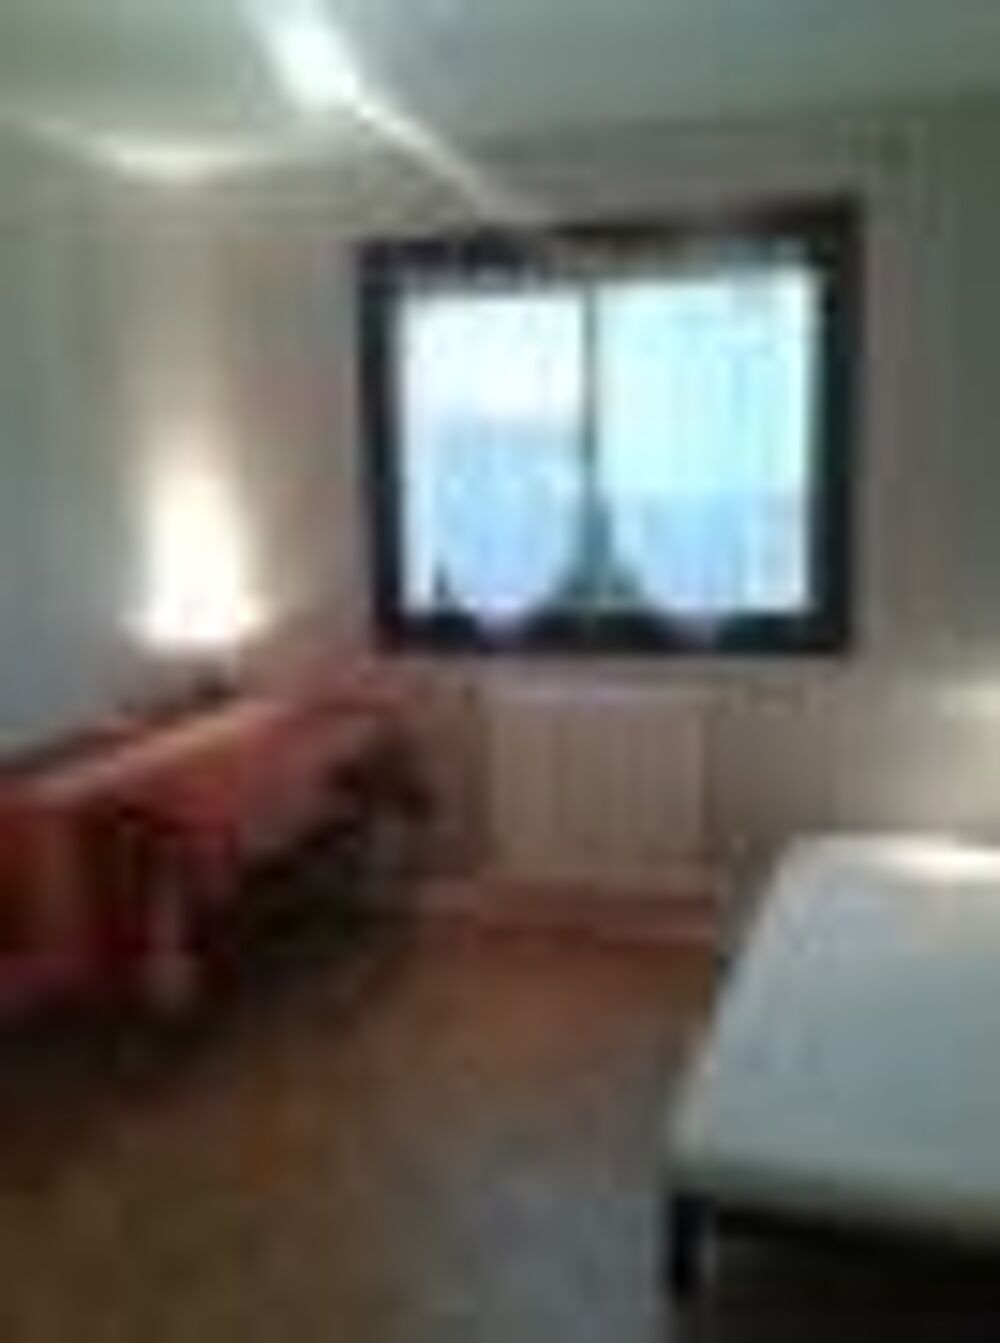 Location Appartement studio meubl ou non meubl 19 m2 calme dans rsidence Reims